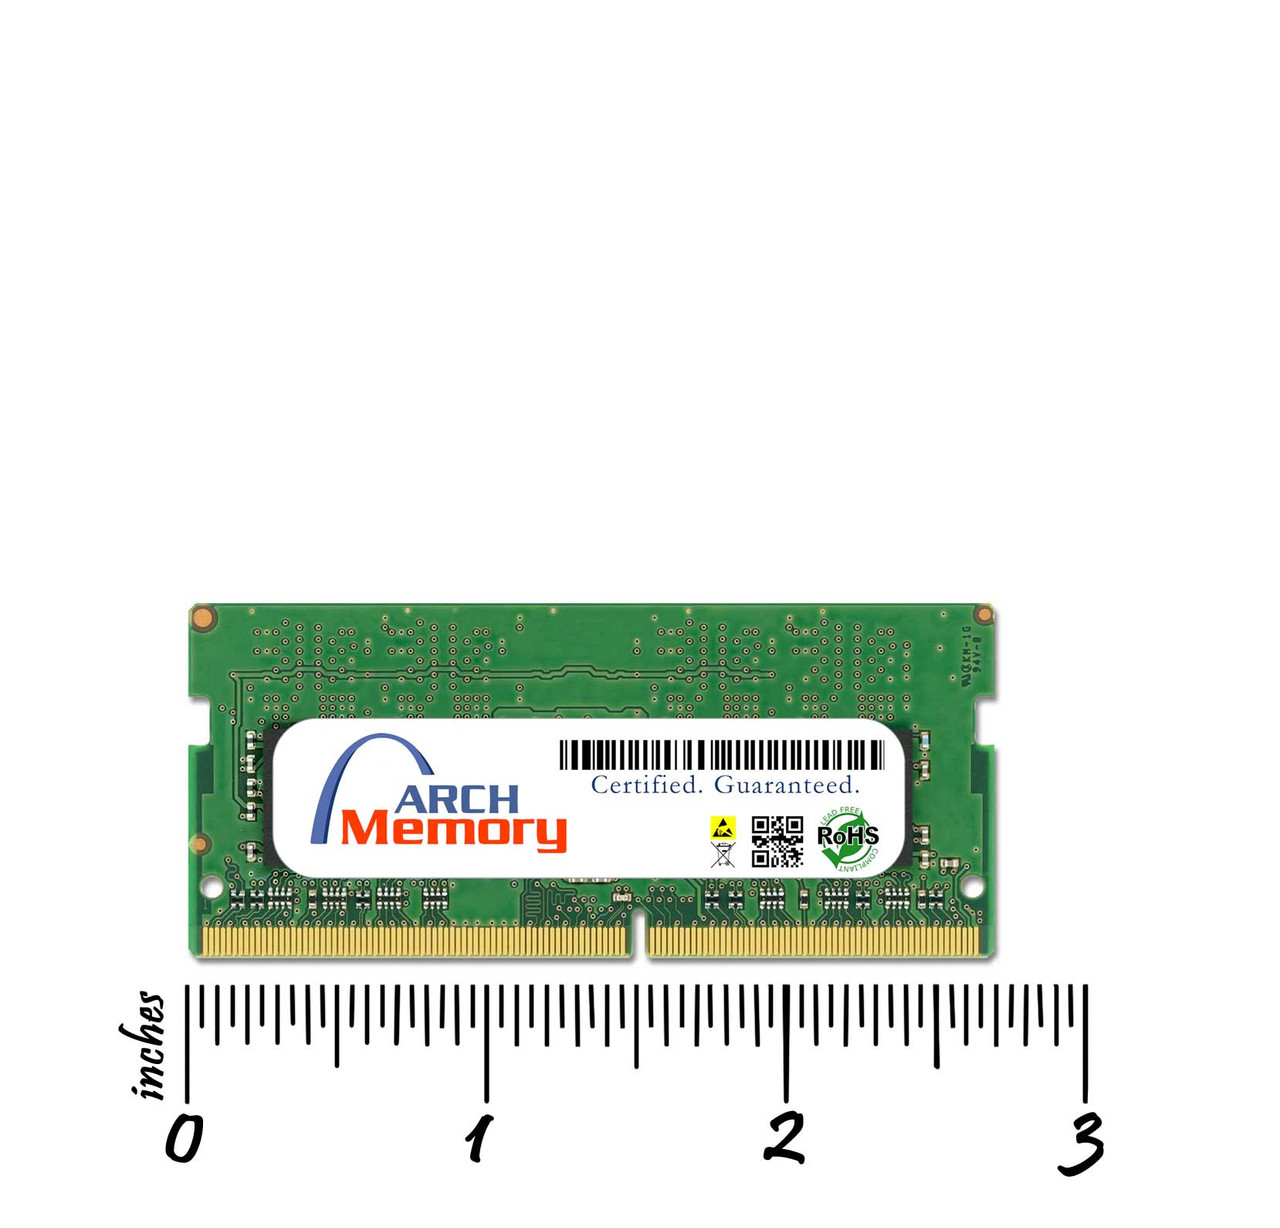 8GB Memory Dell Inspiron 15 3505 DDR4 RAM Upgrade Upgrade* D8GB3200SOr1b8-DMG07